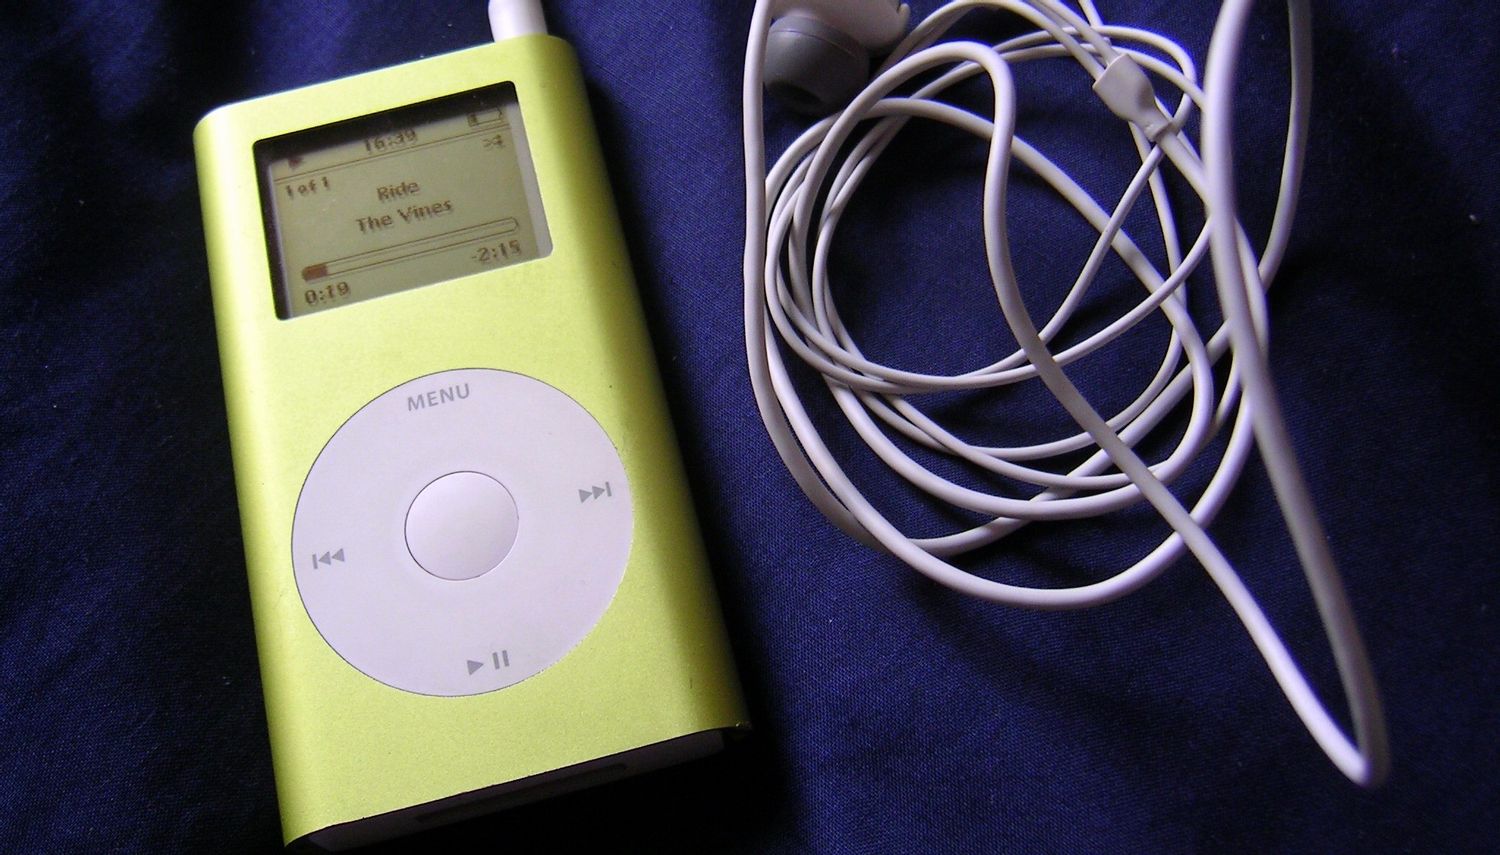 iPod mini được phát hành vào ngày 20 tháng 2 năm 2004